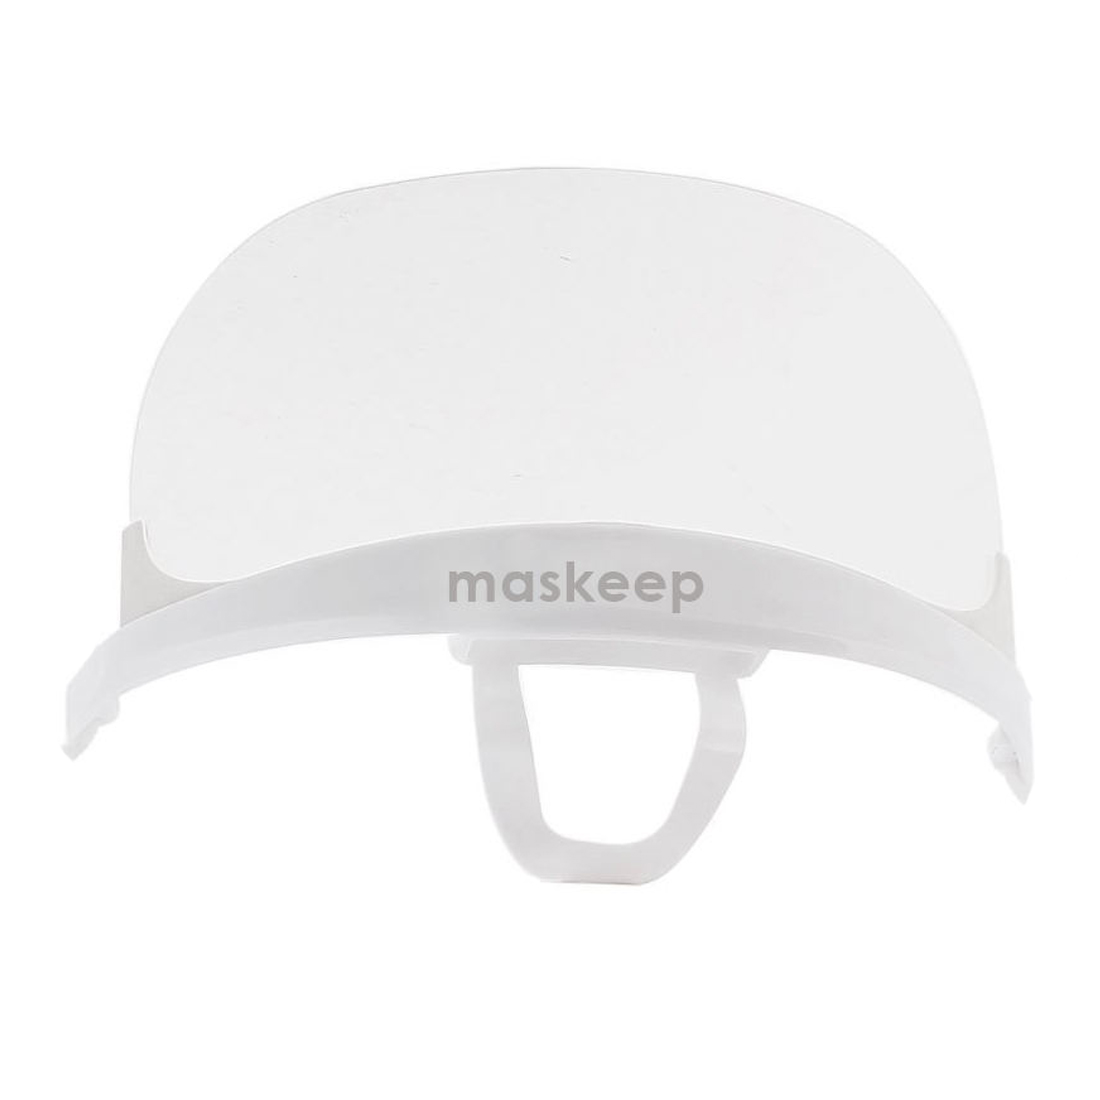 ماسک ماسکیپ مدل Transparent بسته 12 عددی